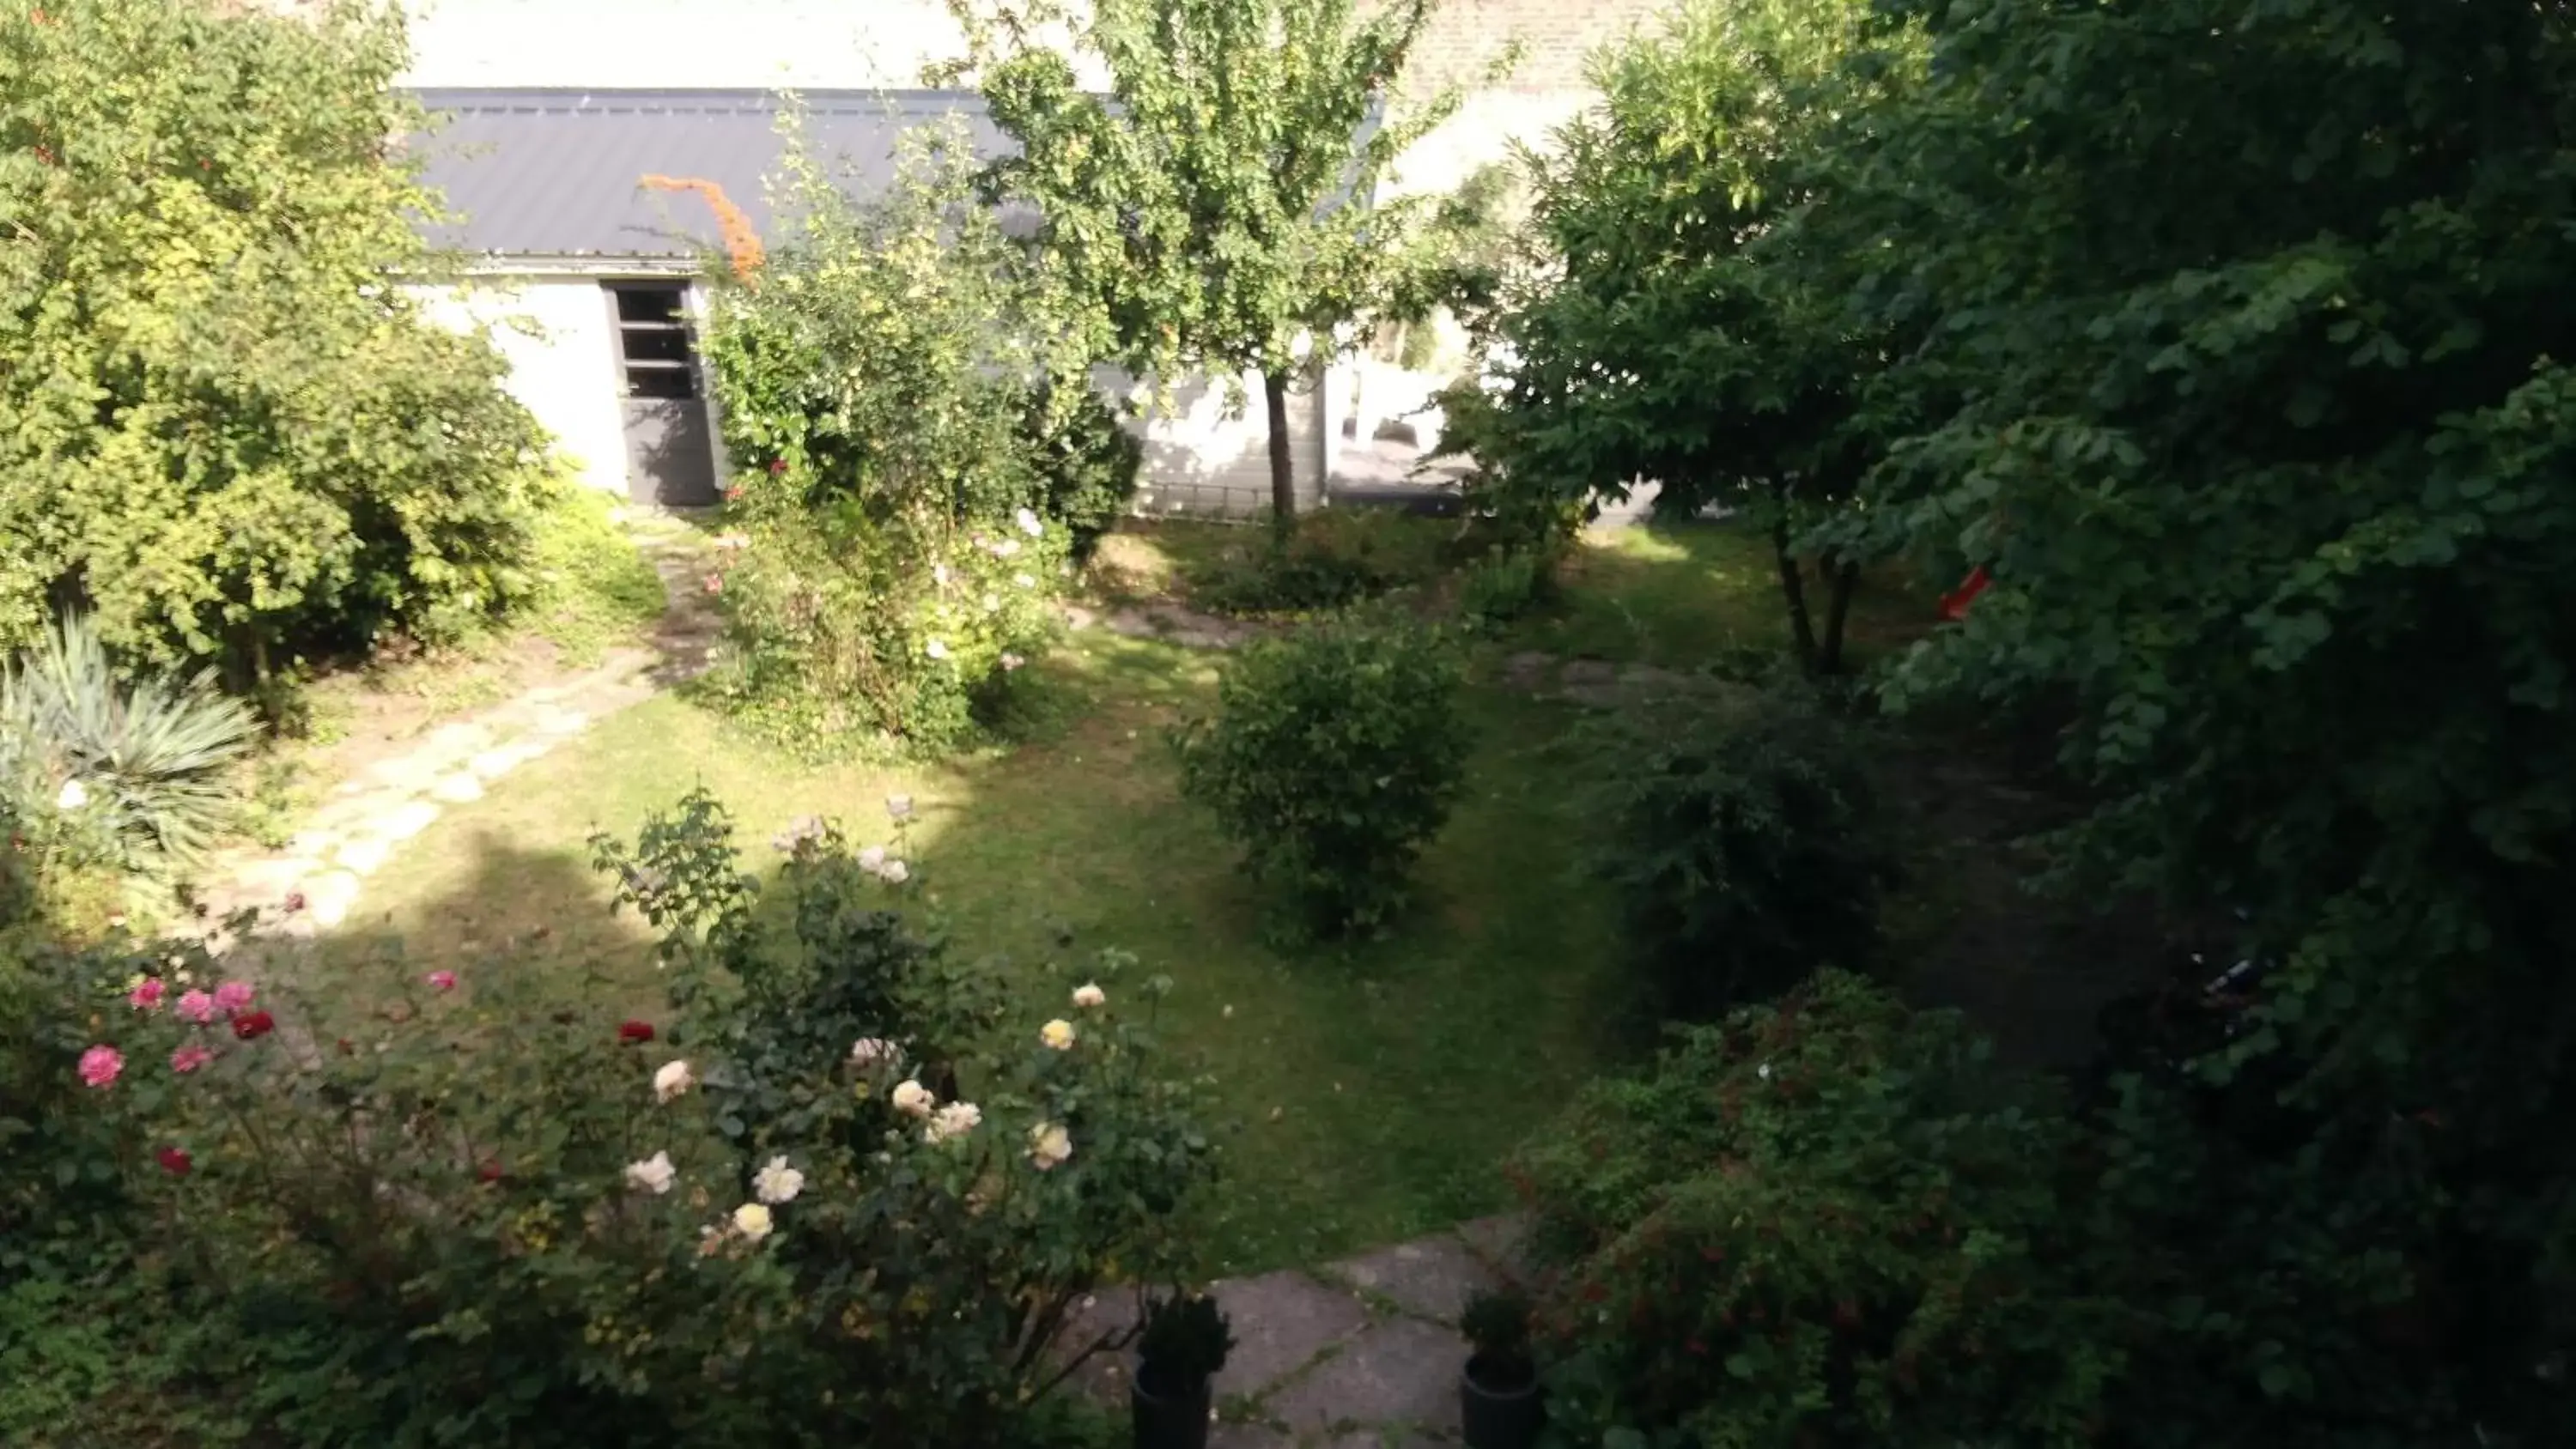 Garden view, Garden in Jules Verne